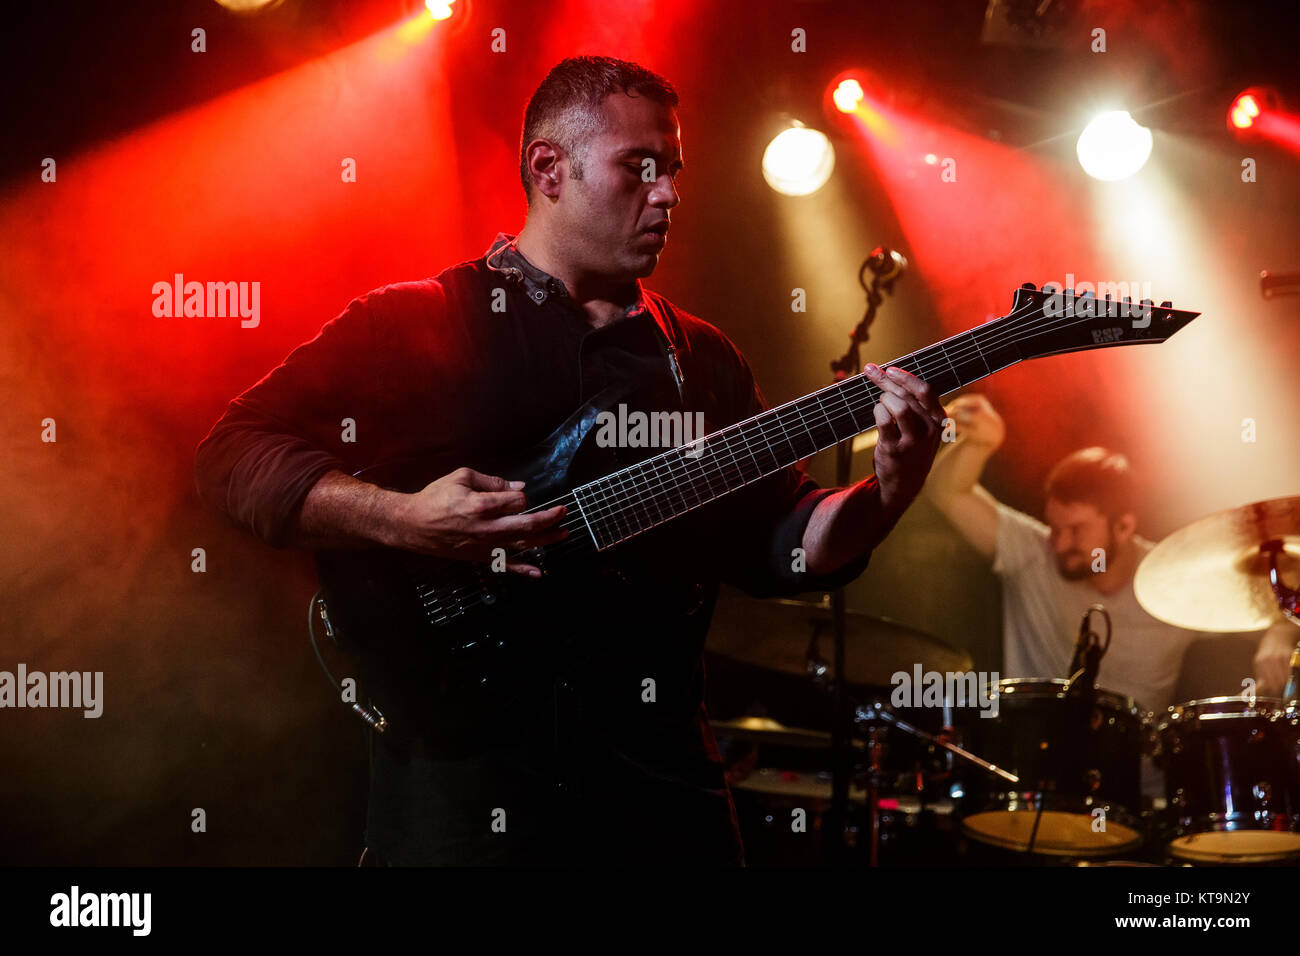 La banda de metal progresivo instrumental estadounidense animales como líderes realiza en vivo en Pumpehuset en Copenhague. el guitarrista y el bajista Javier Reyes es visto en vivo en